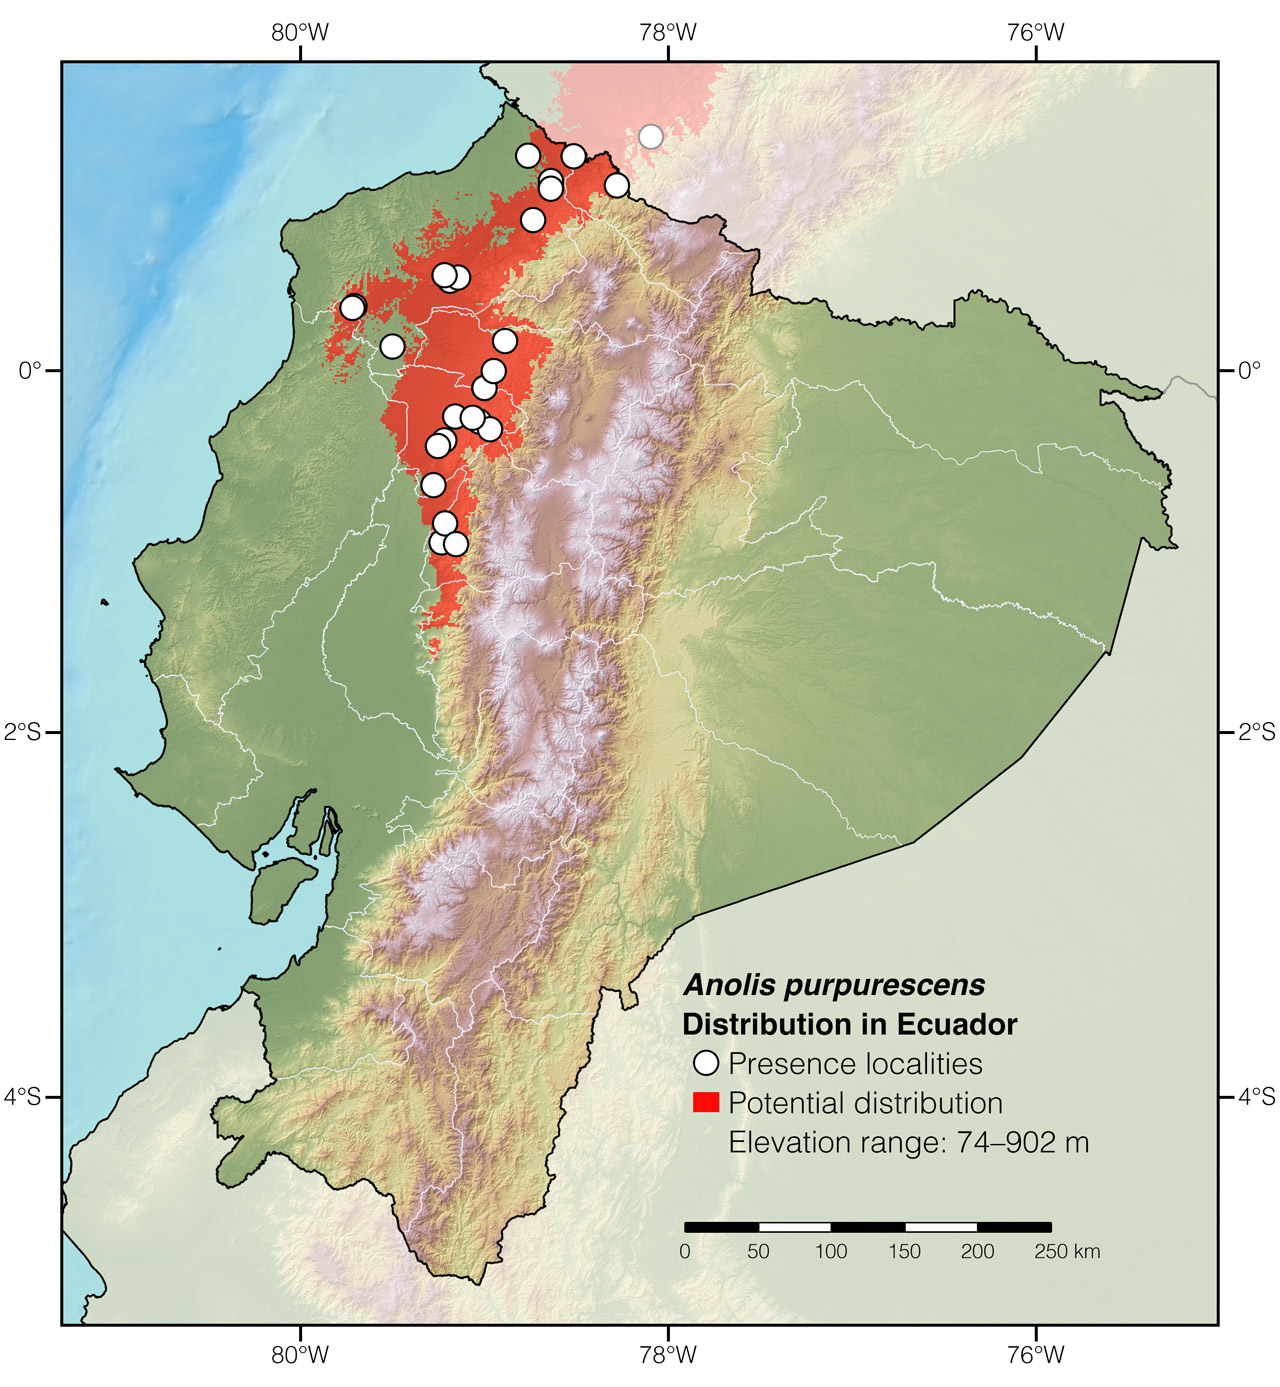 Distribution of Anolis purpurescens in Ecuador